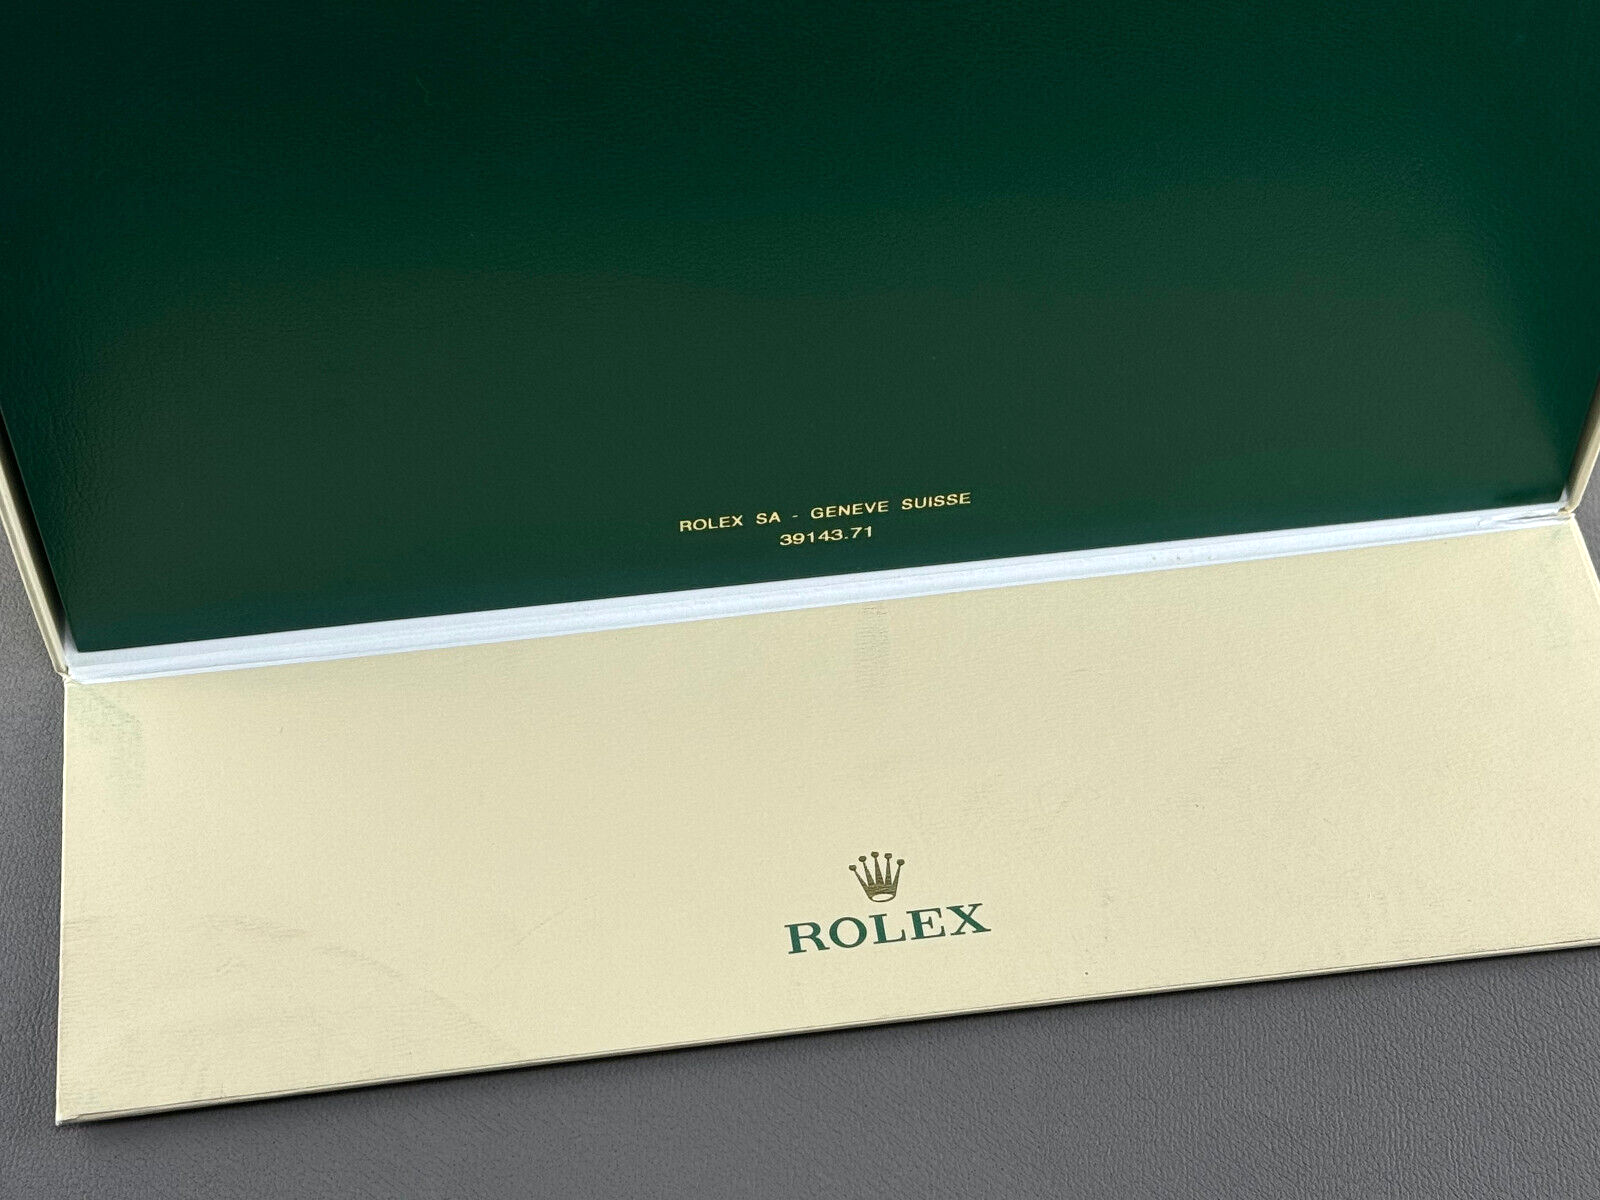 Rolex Oyster Box Größe XL 39143.71